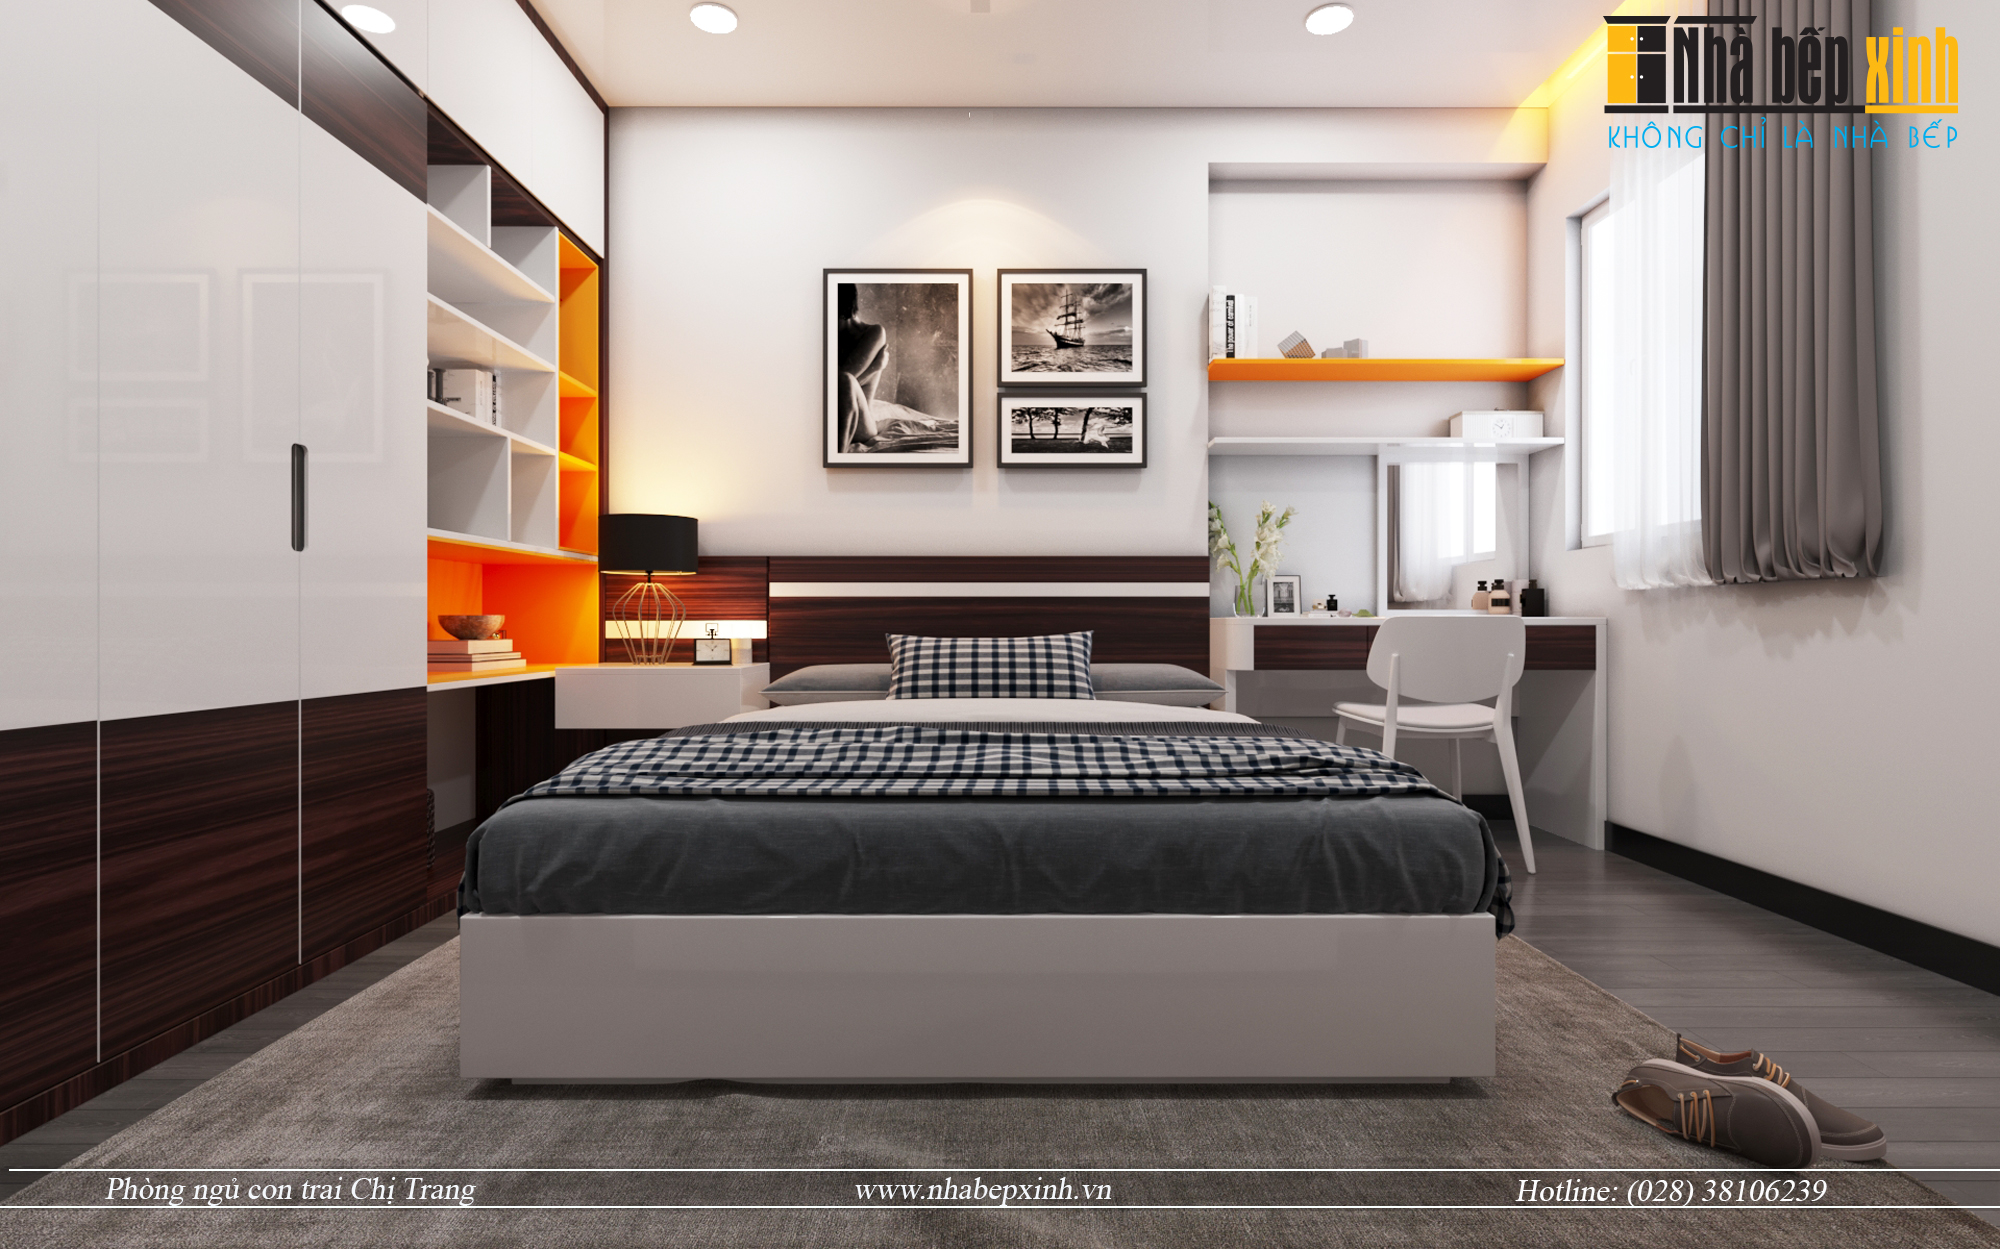 Phòng ngủ hiện đại mang phong cách đơn giản